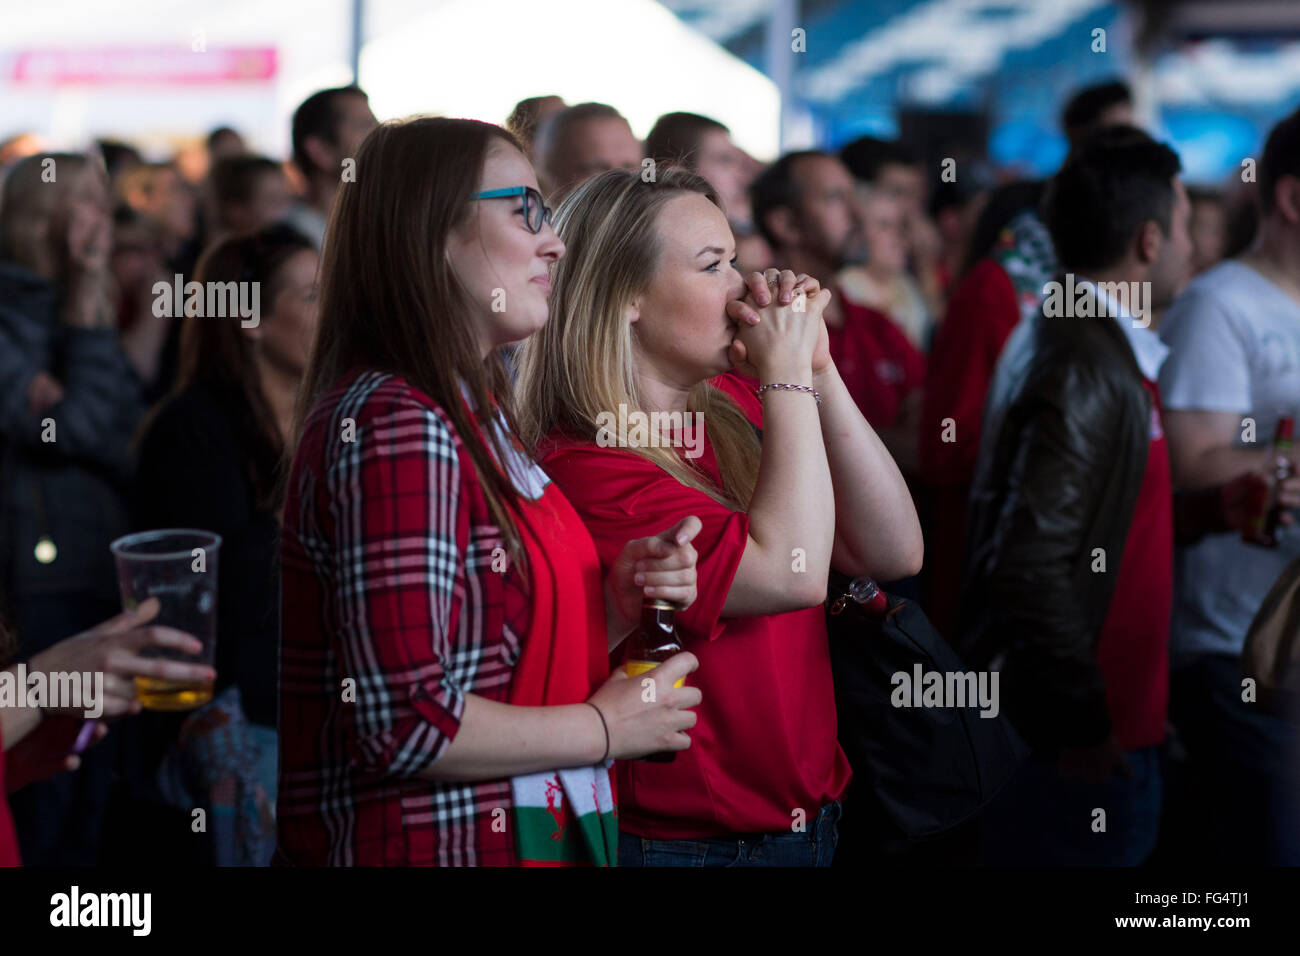 Leidenschaftliche Wales Rugby-Fans sehen Wales während der Rugby-Weltmeisterschaft 2015 in der Fanzone Cardiff in Cardiff, Südwales. Stockfoto